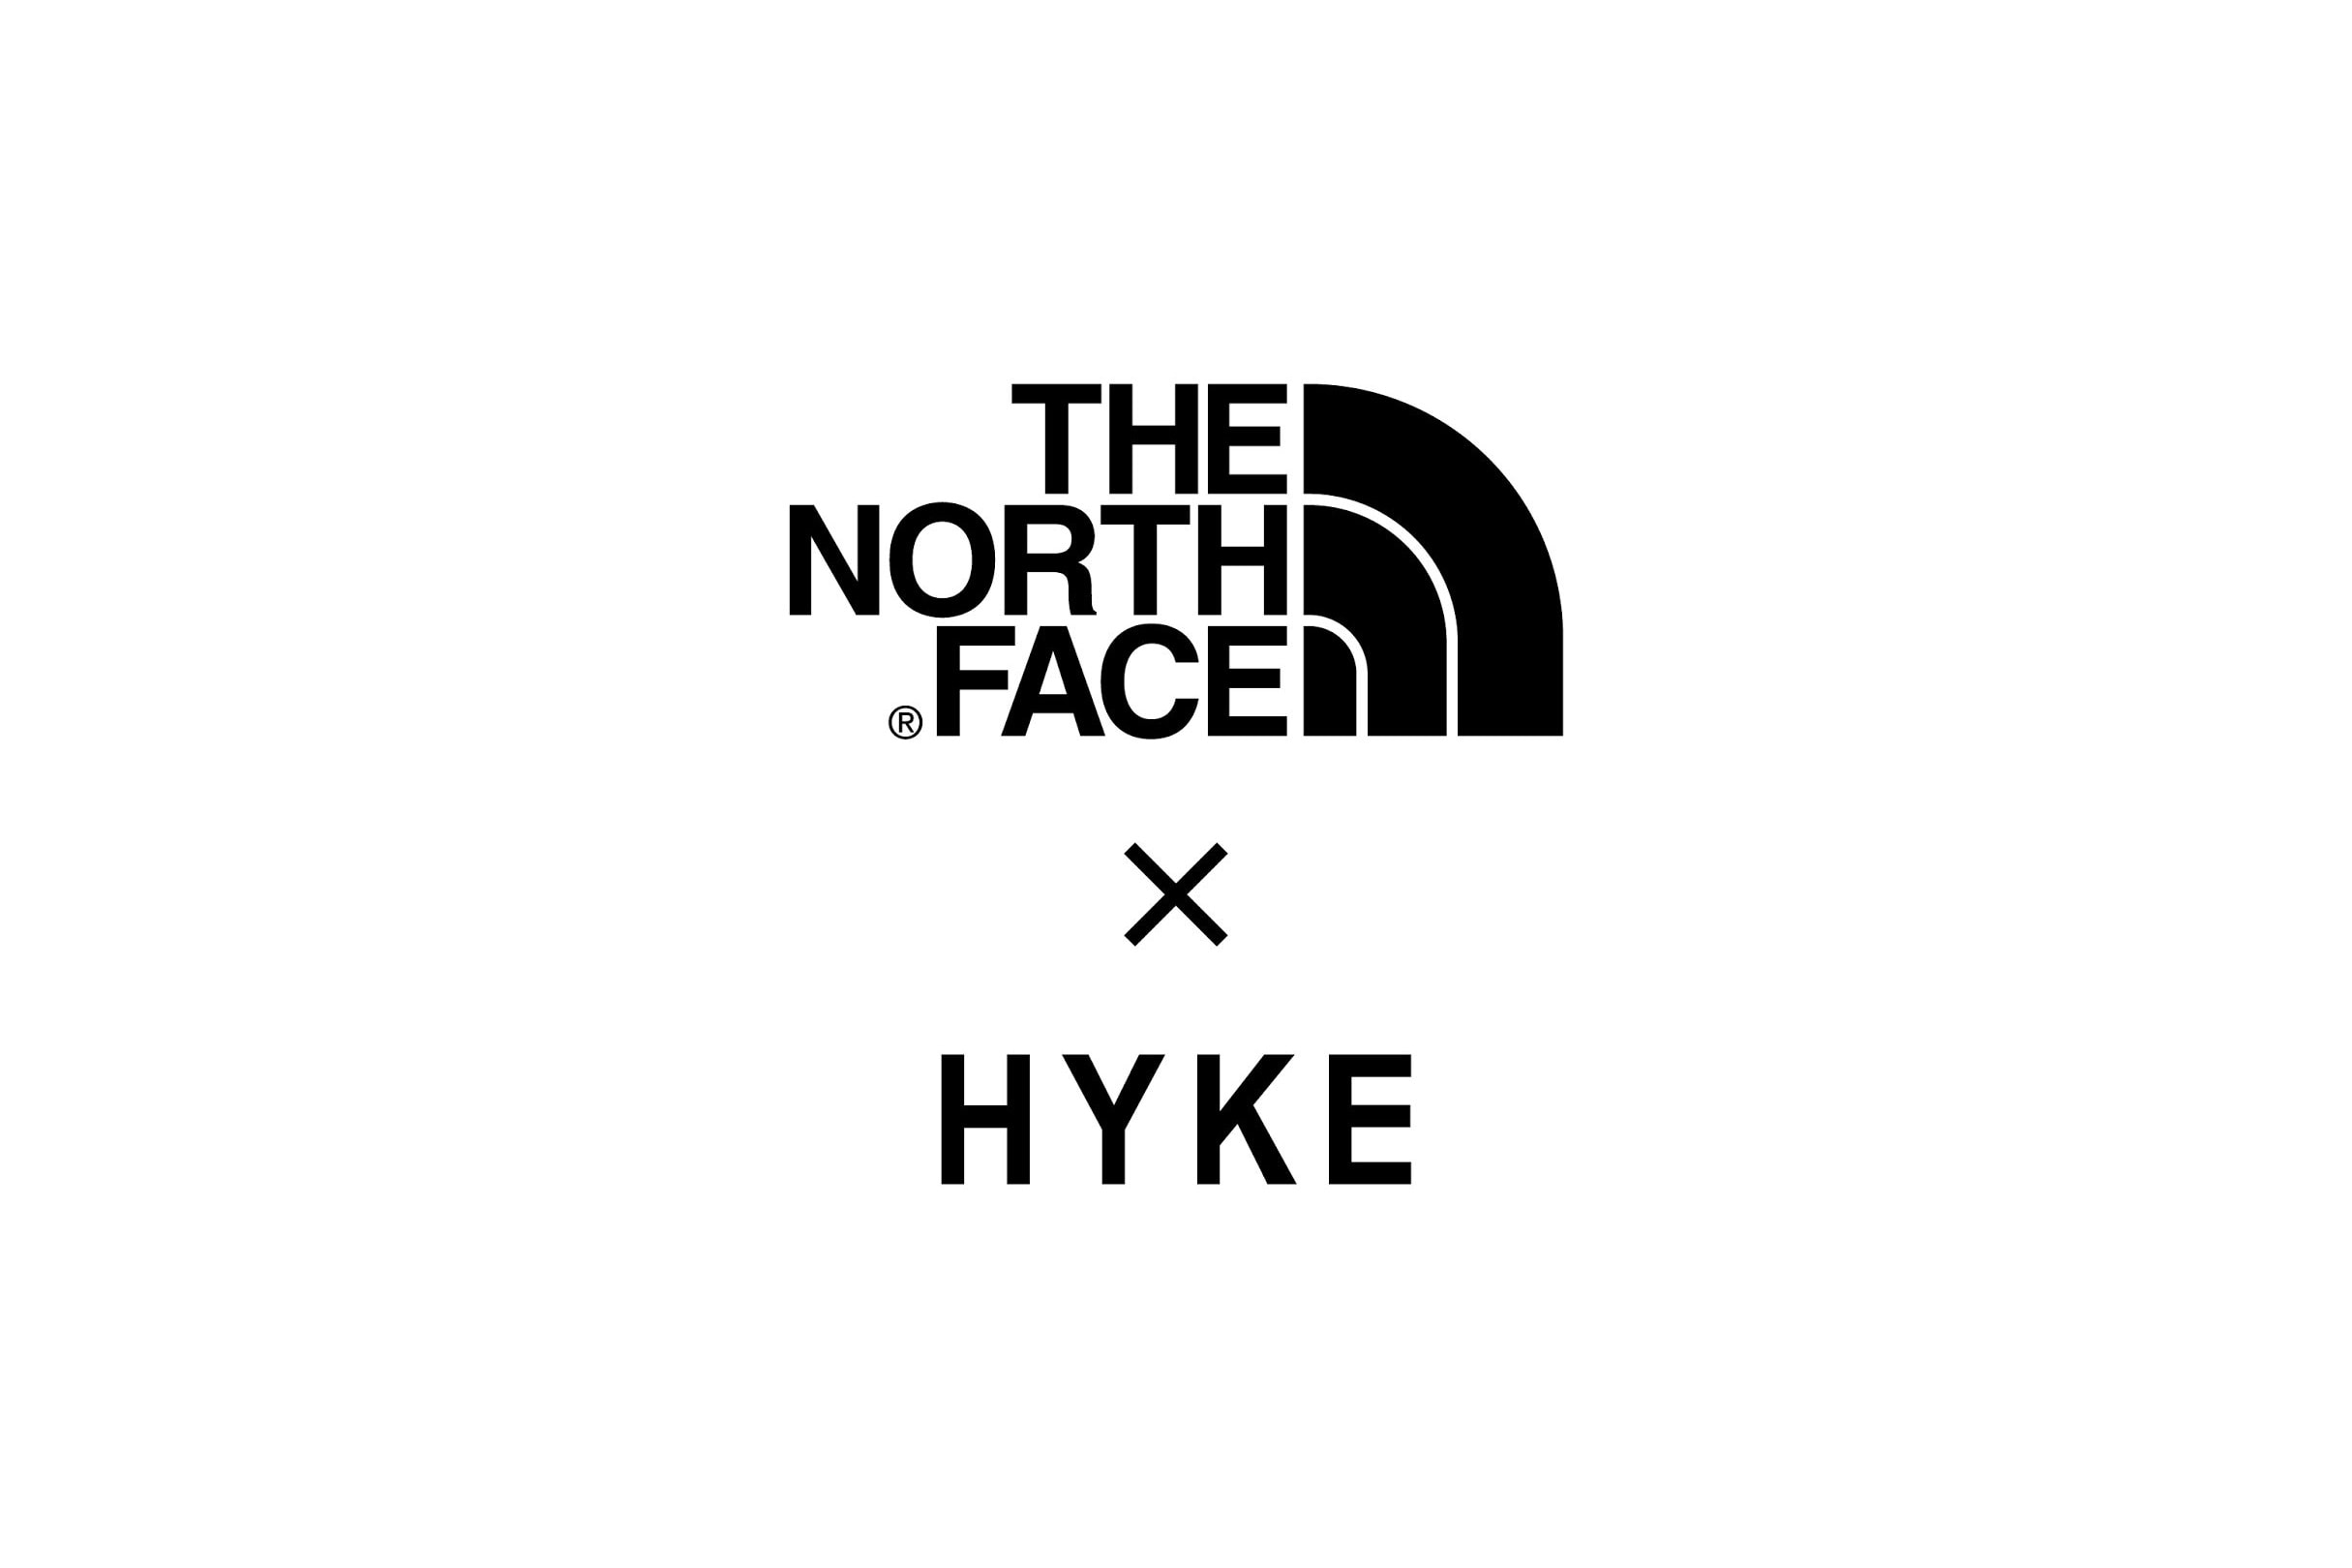 HYKE x THE NORTH FACE が2018年春夏シーズンよりコラボラインをスタート ハイク ザ・ノース・フェイス 2018ss spring summer コラボ